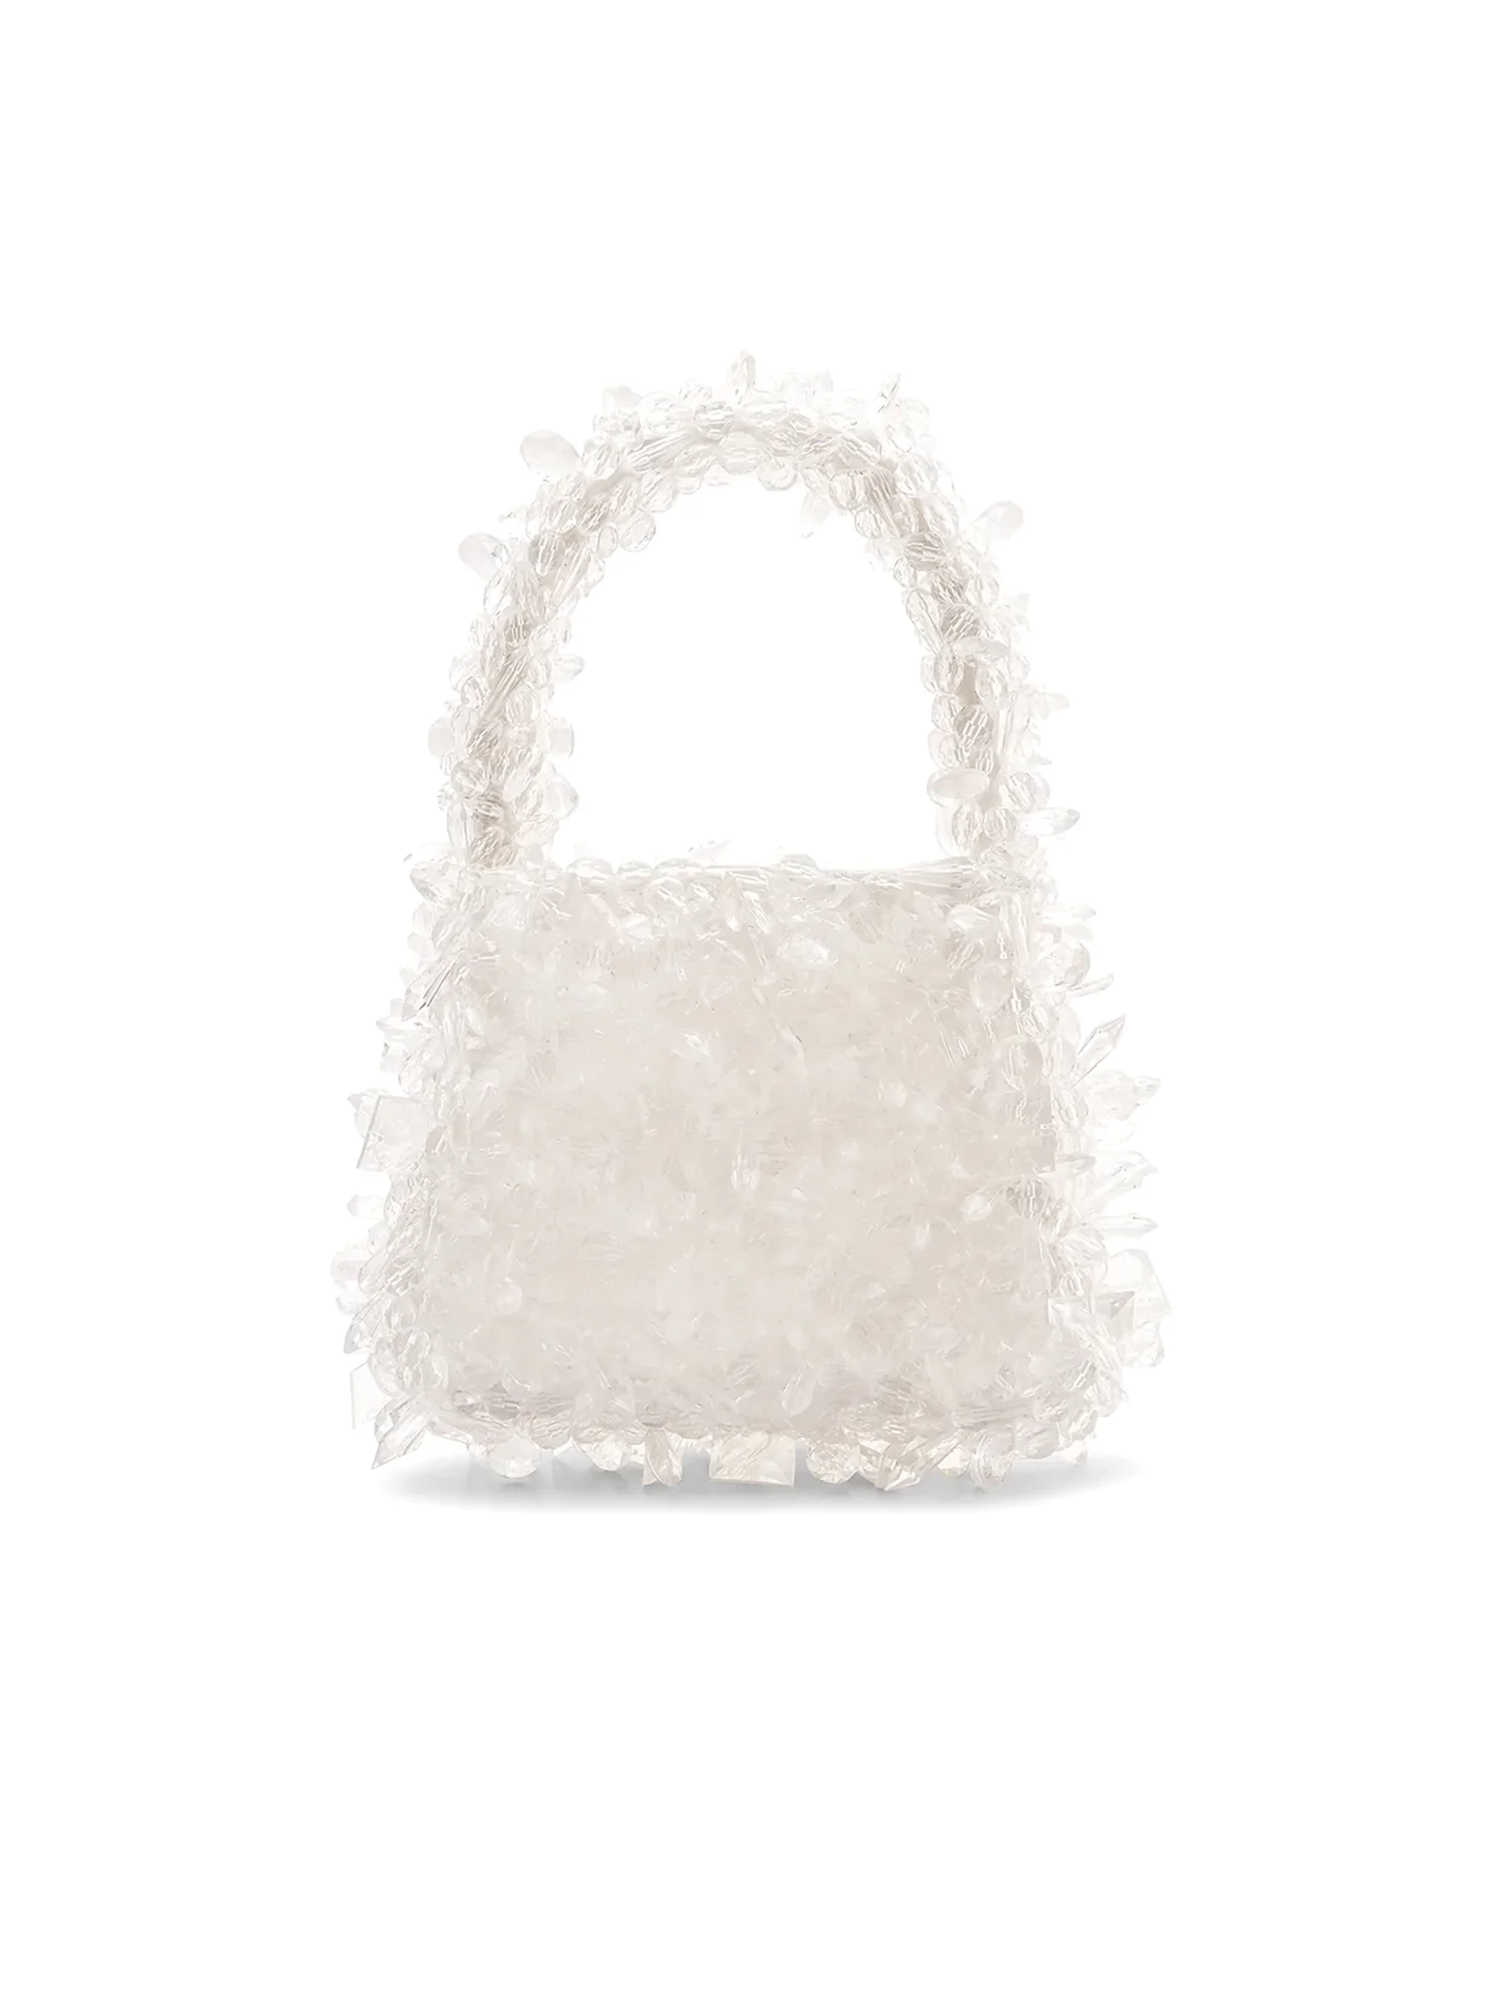 Clio Peppiatt Square Quartz Bag